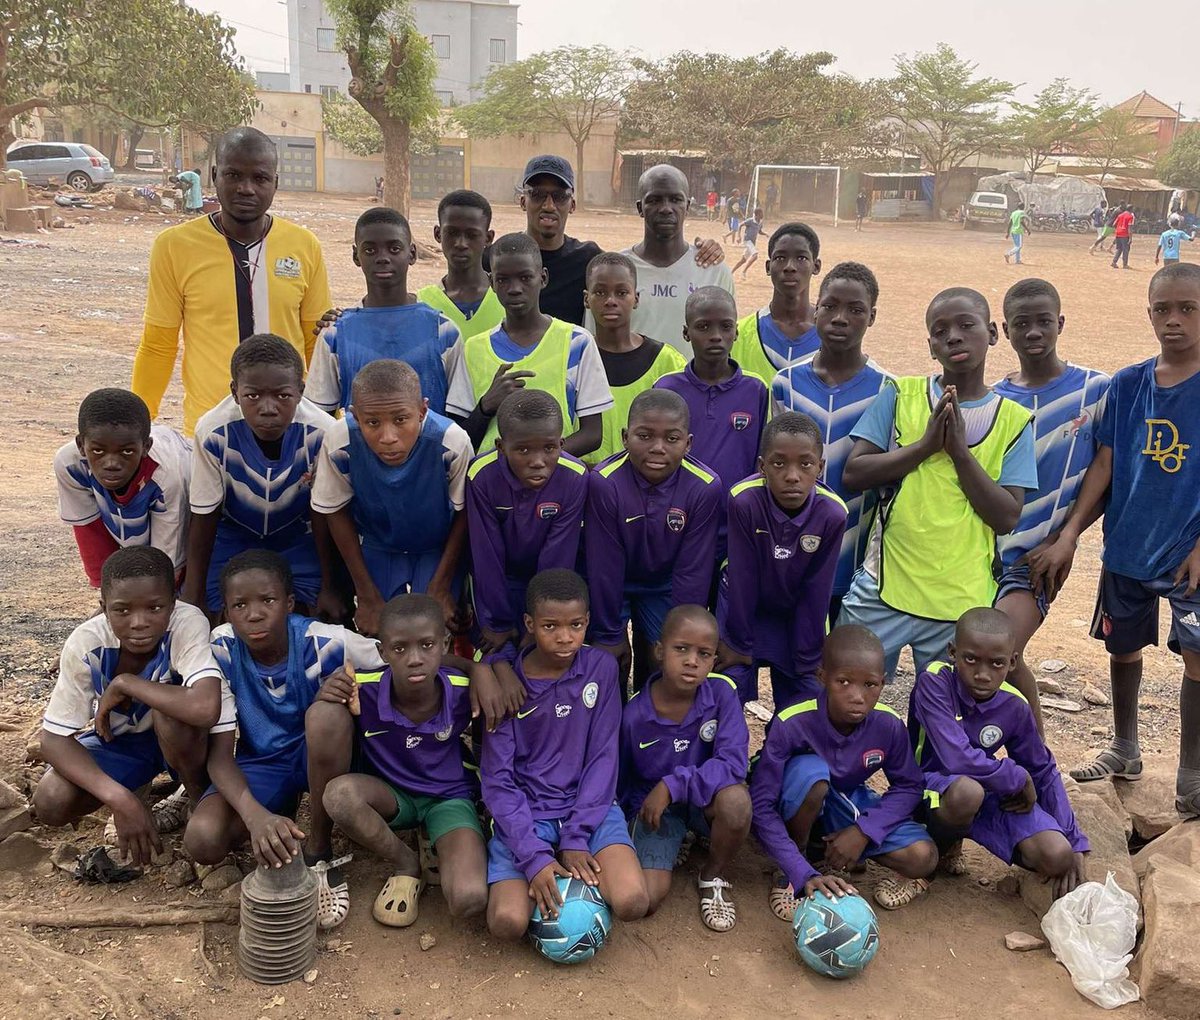 🚨HUMANITAIRE🚨 Comme chaque année nous profitons d’un voyage de l’un de nos adhérents pour faire quelques dons de maillots, chasubles… aux enfants. Cette saison les dons ont atterri au Mali 🇲🇱, Sénégal 🇸🇳 et Côte d’Ivoire 🇨🇮 ✅✅ Merci à ceux qui ont participé au projet 👏👏